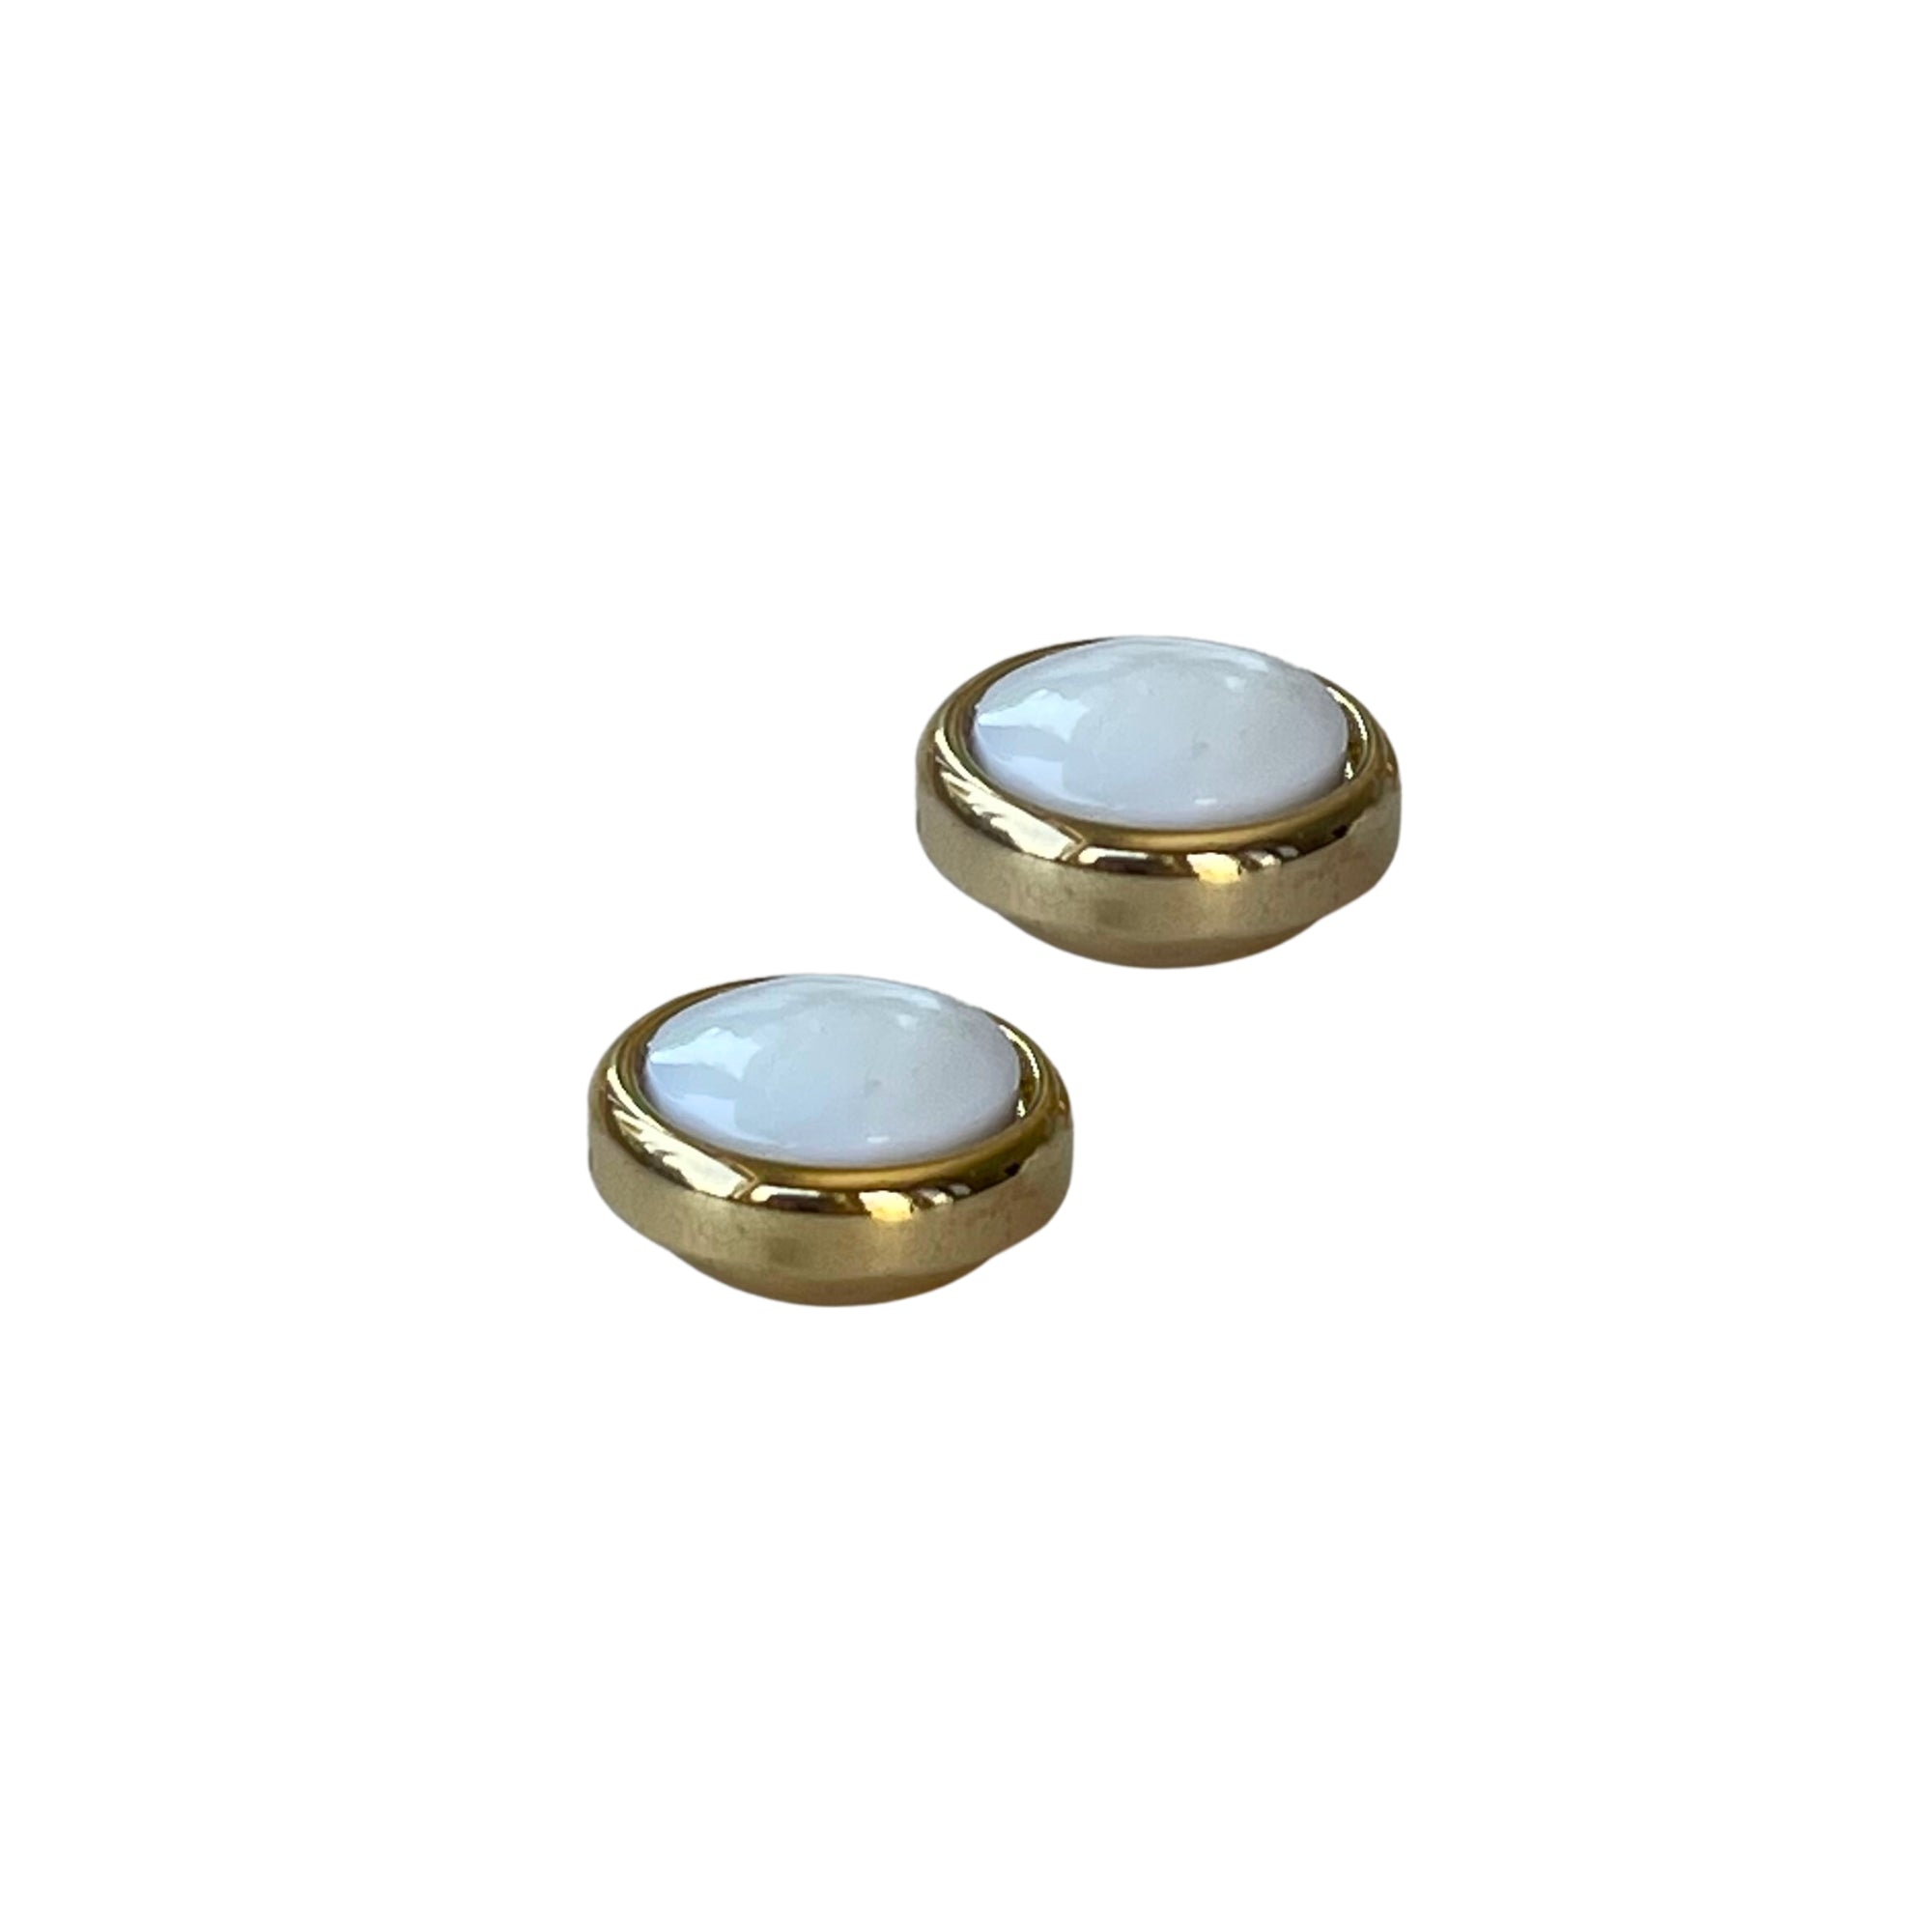 Weiße Ohrringe mit Magnetverschluss aus Perlmutt - Durchmesser: 1,2 cm - Vergoldet - Der Magnetverschluss erleichtert das Anlegen und sorgt dafür, dass der Ohrring fest im Ohr sitzt